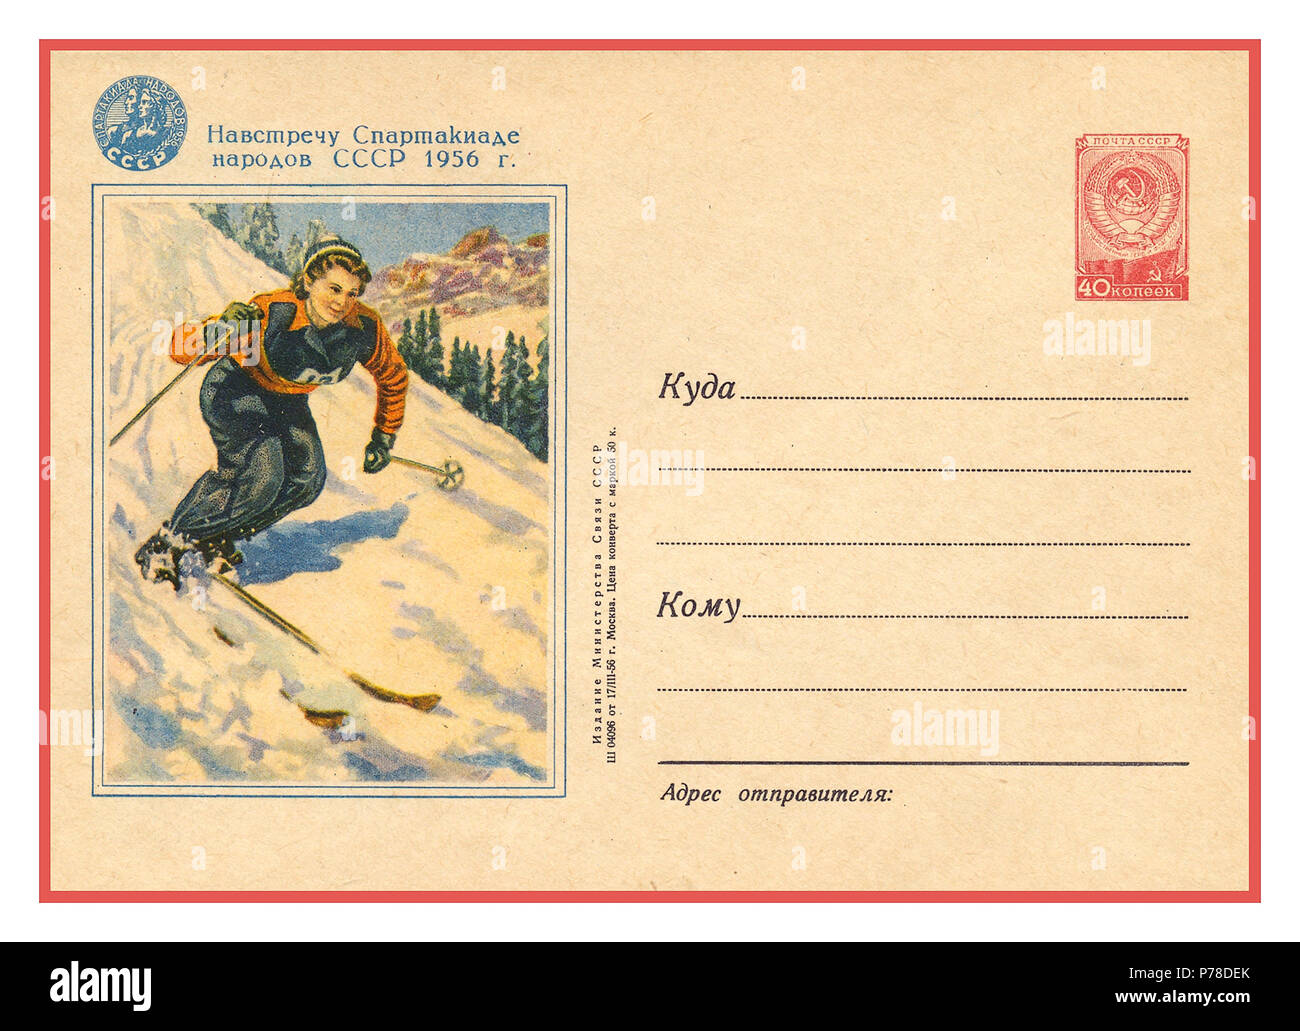 Annata 1956 Giochi Olimpici Invernali cartolina celebrando CCCP Russia attività sportive partecipazione, illustrazione con URSS CCCP sovietica francobollo Foto Stock